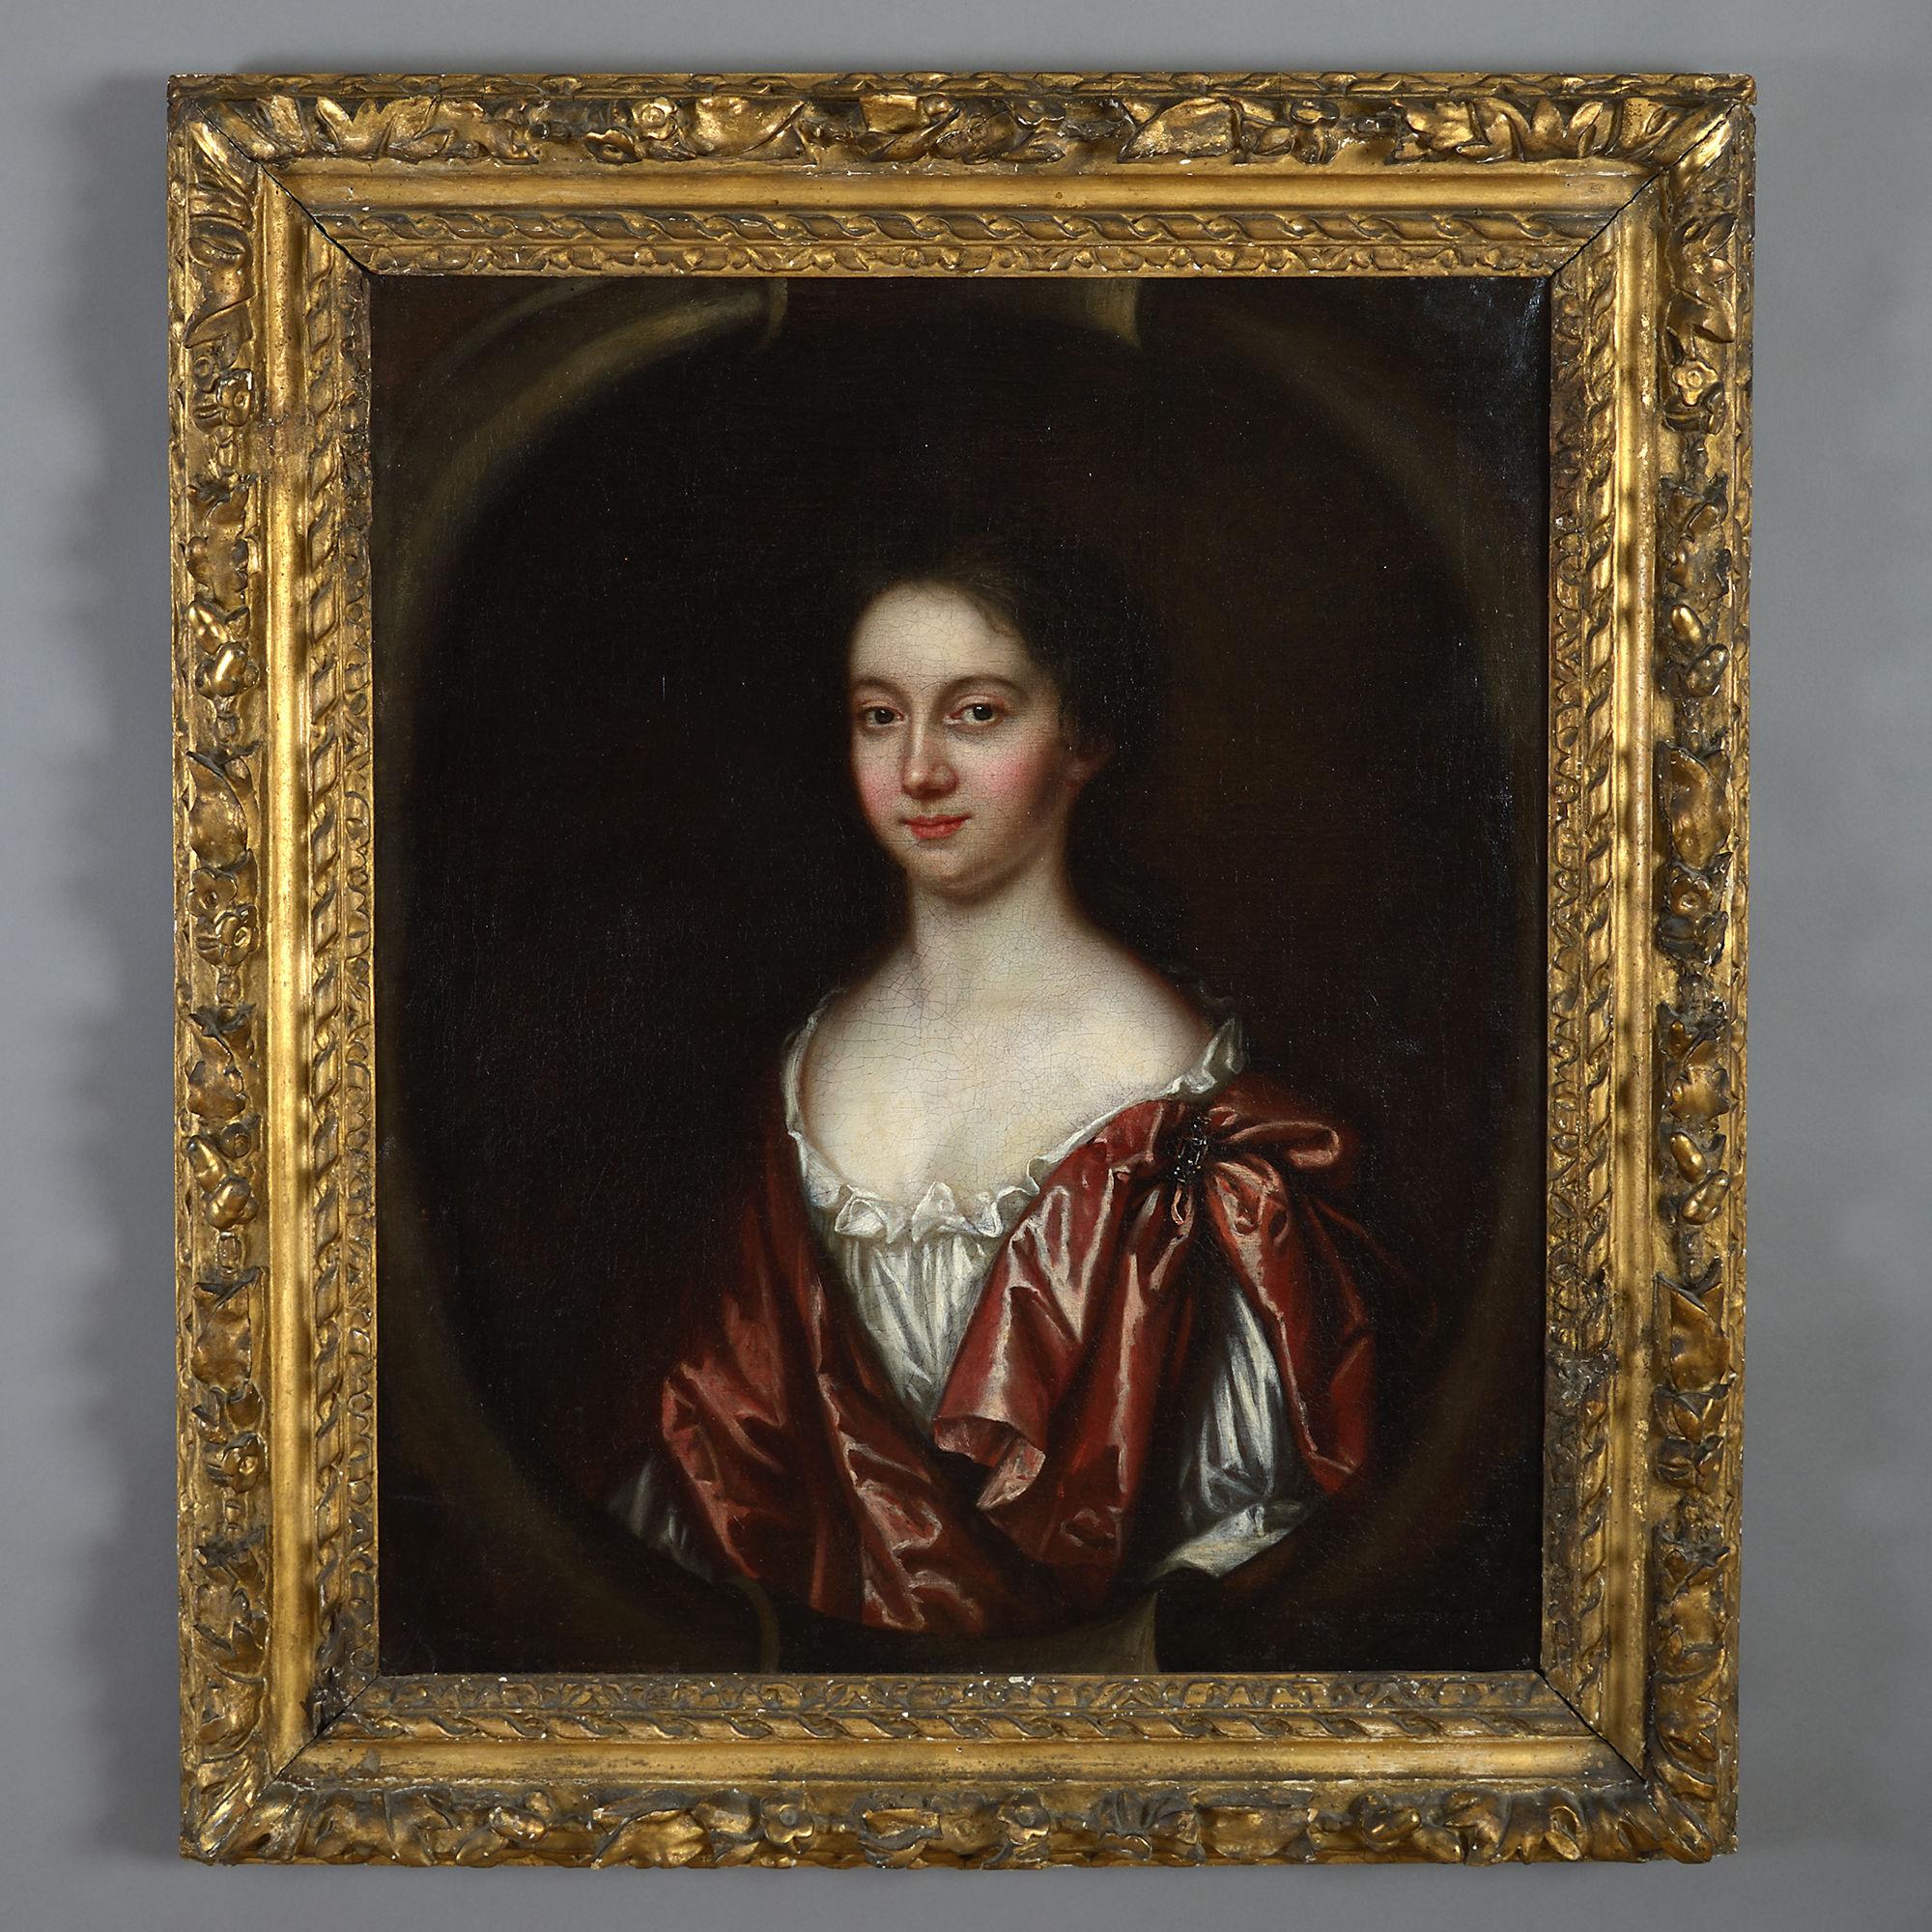 Ölgemälde auf Leinwand, Porträt einer Dame, Porträt von Charles Beale (1660-1714), spätes 17. Jahrhundert 